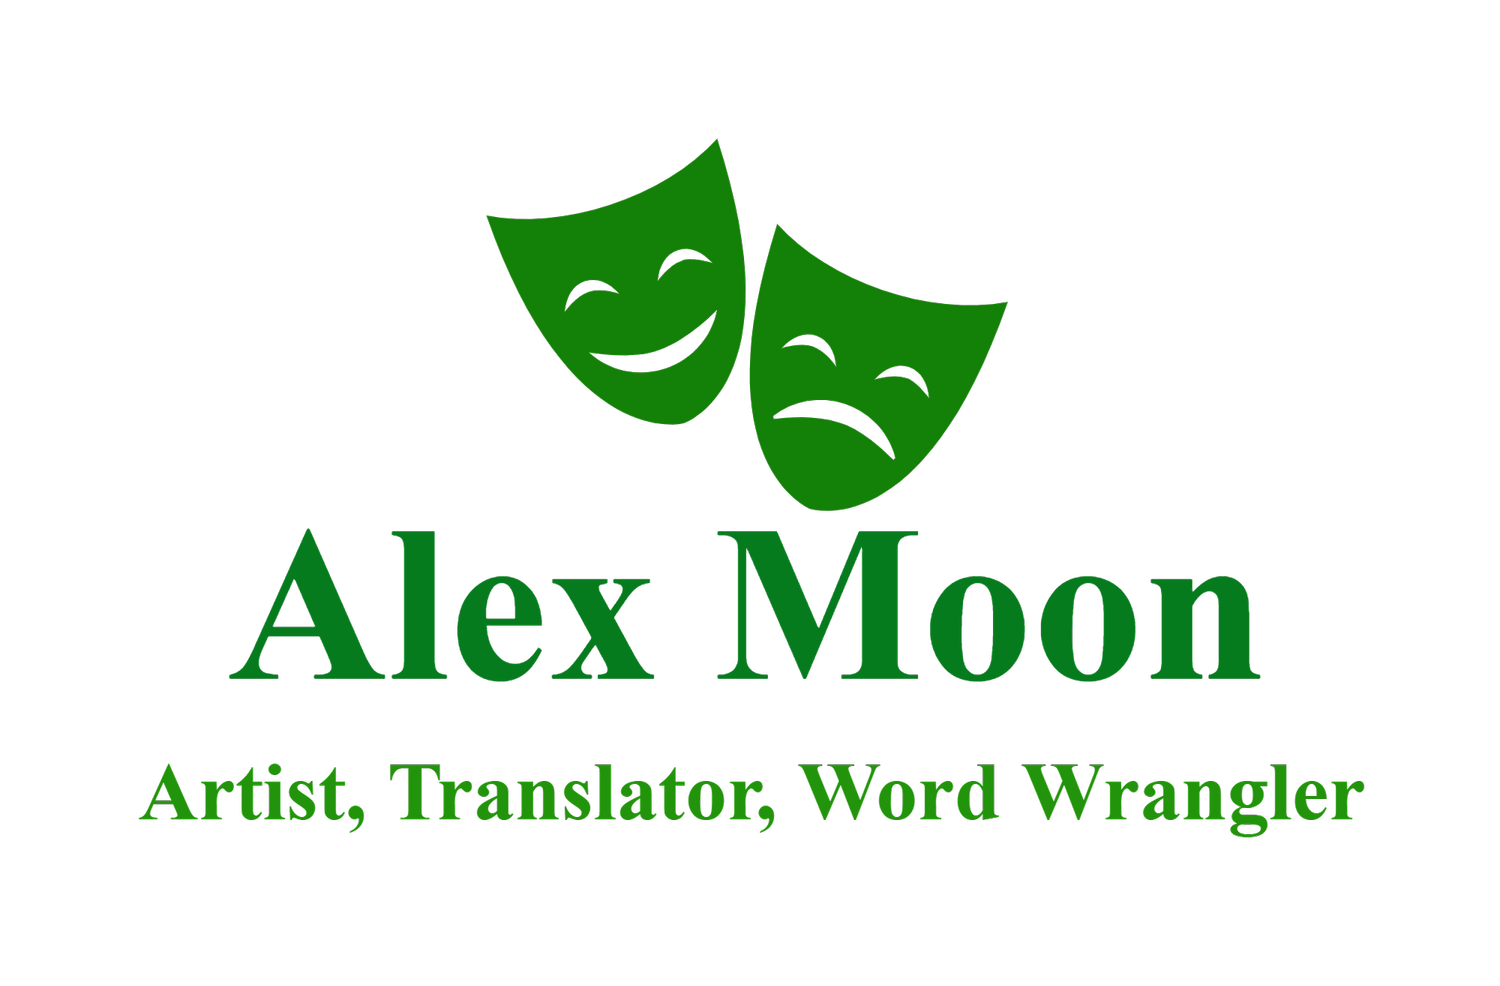 Alex Moon